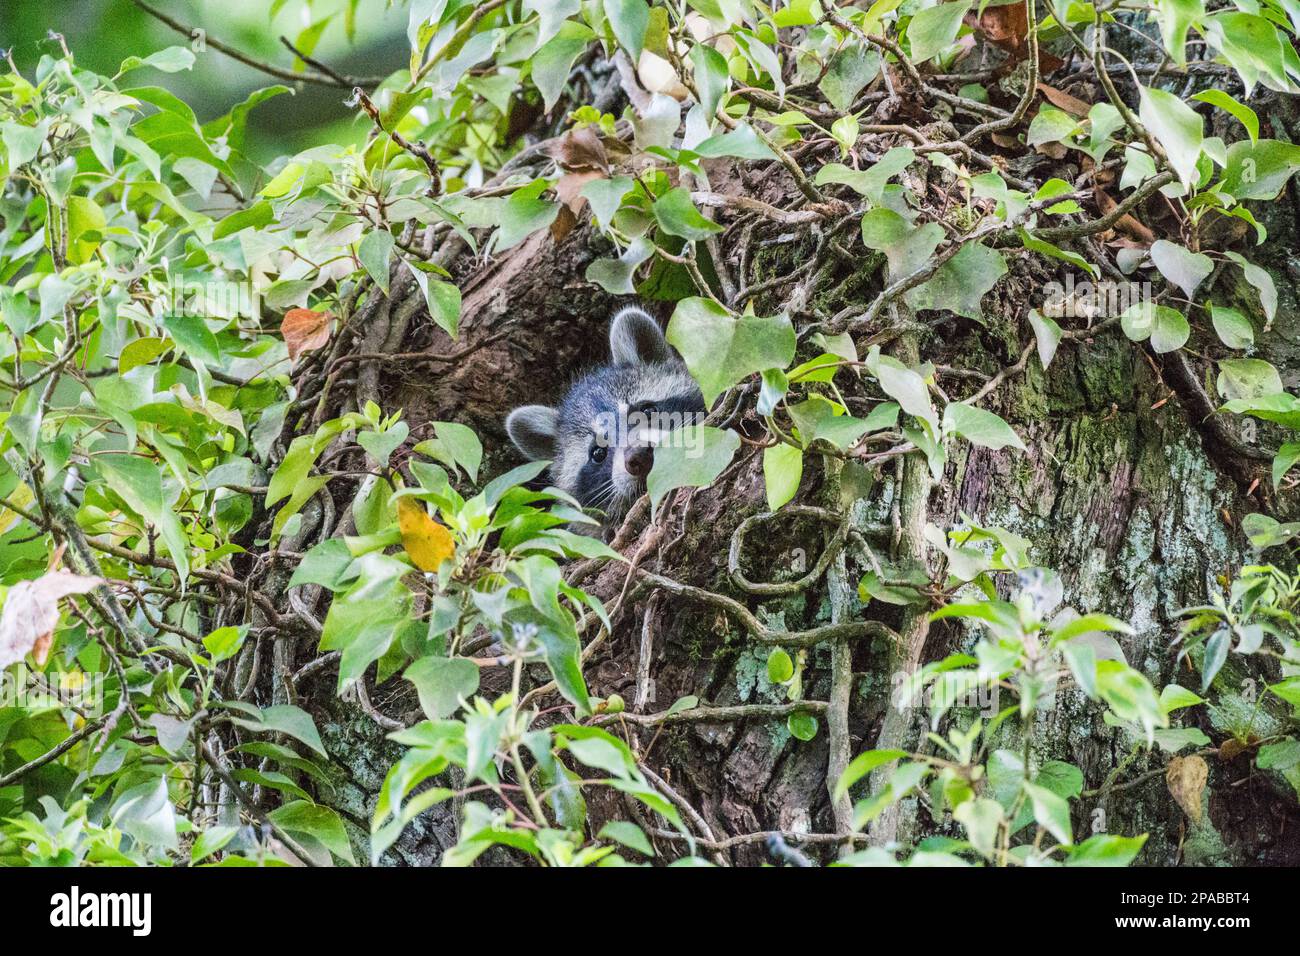 Junge Waschbären schauen aus ihrer Baumhöhle, umrankt von Efeu - Young raccoons look out of their tree hollow, entwined with ivy Stock Photo